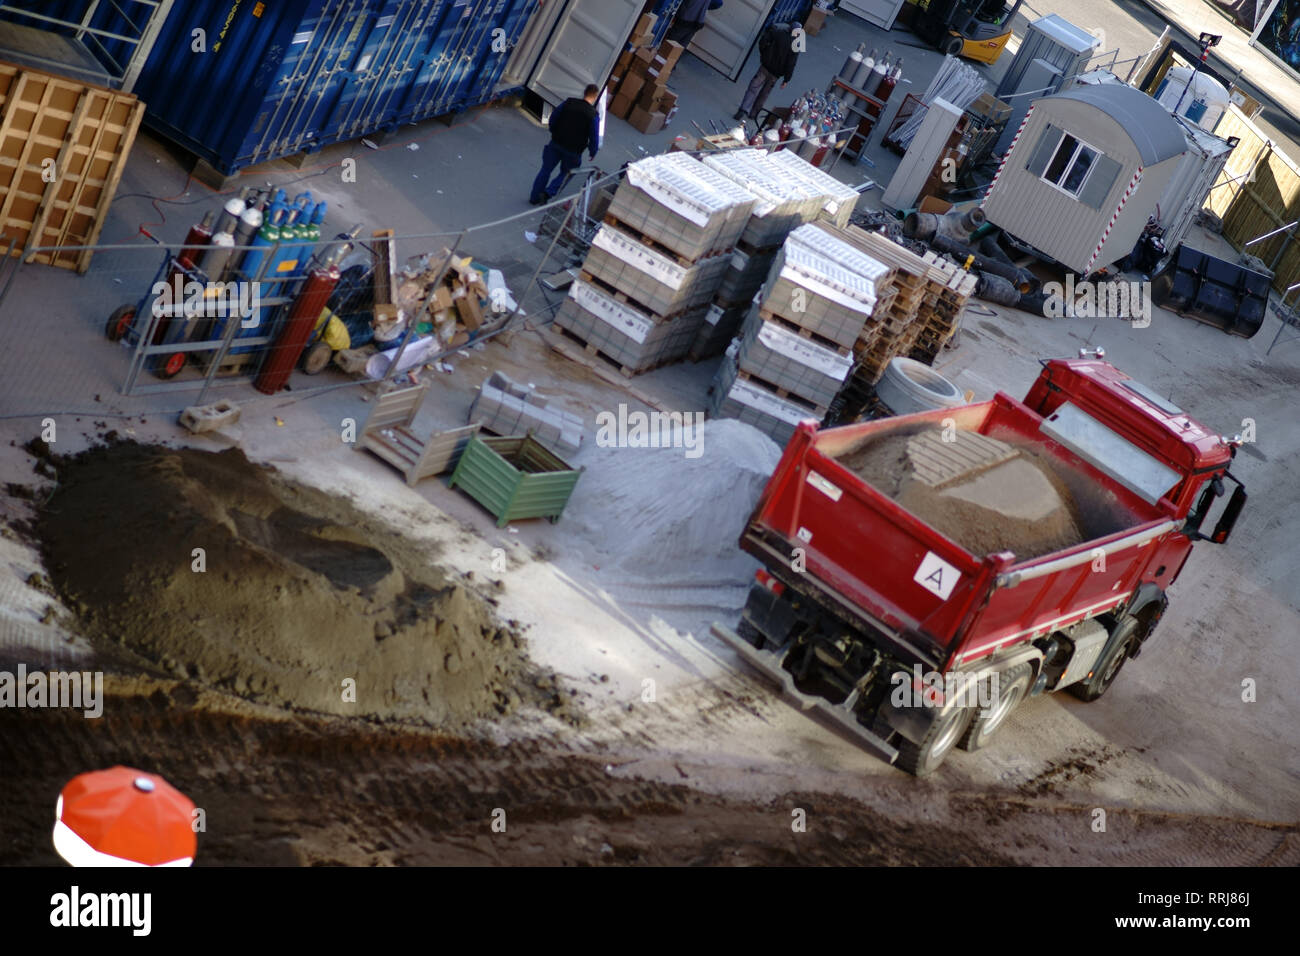 L'angle de vue sur un chantier de construction dans le centre ville de Berlin, avec des cailloux, les camions, les bouteilles de gaz et d'outils. Banque D'Images